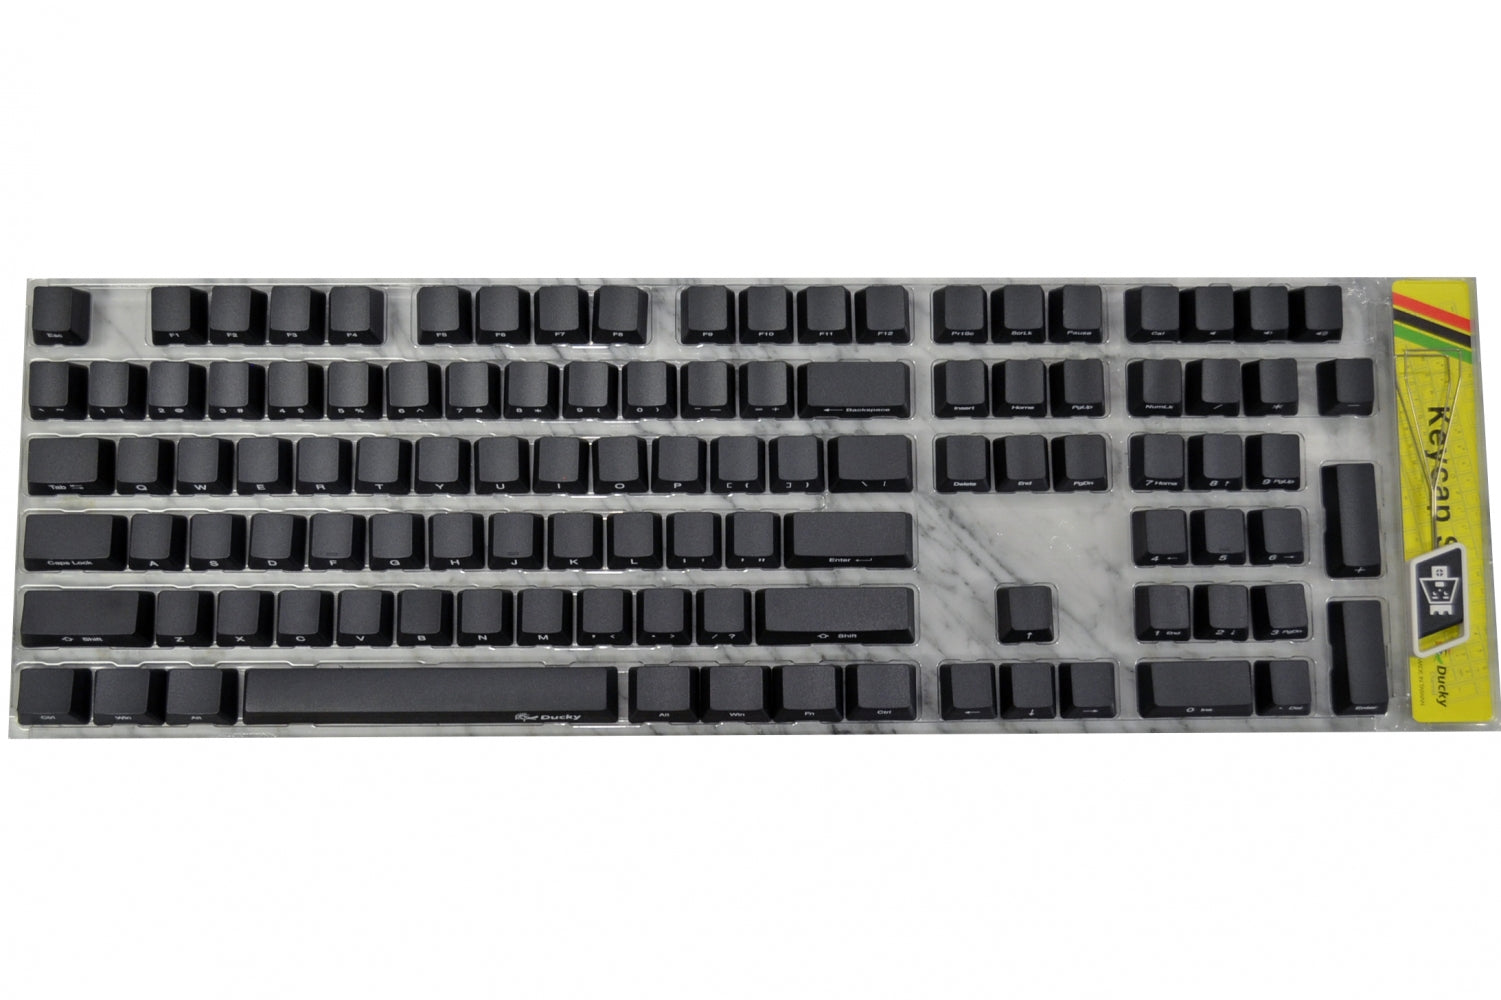 Ducky 108 Key PBT Black Side Print Keycap Set MK7459ASZ9 |37422|